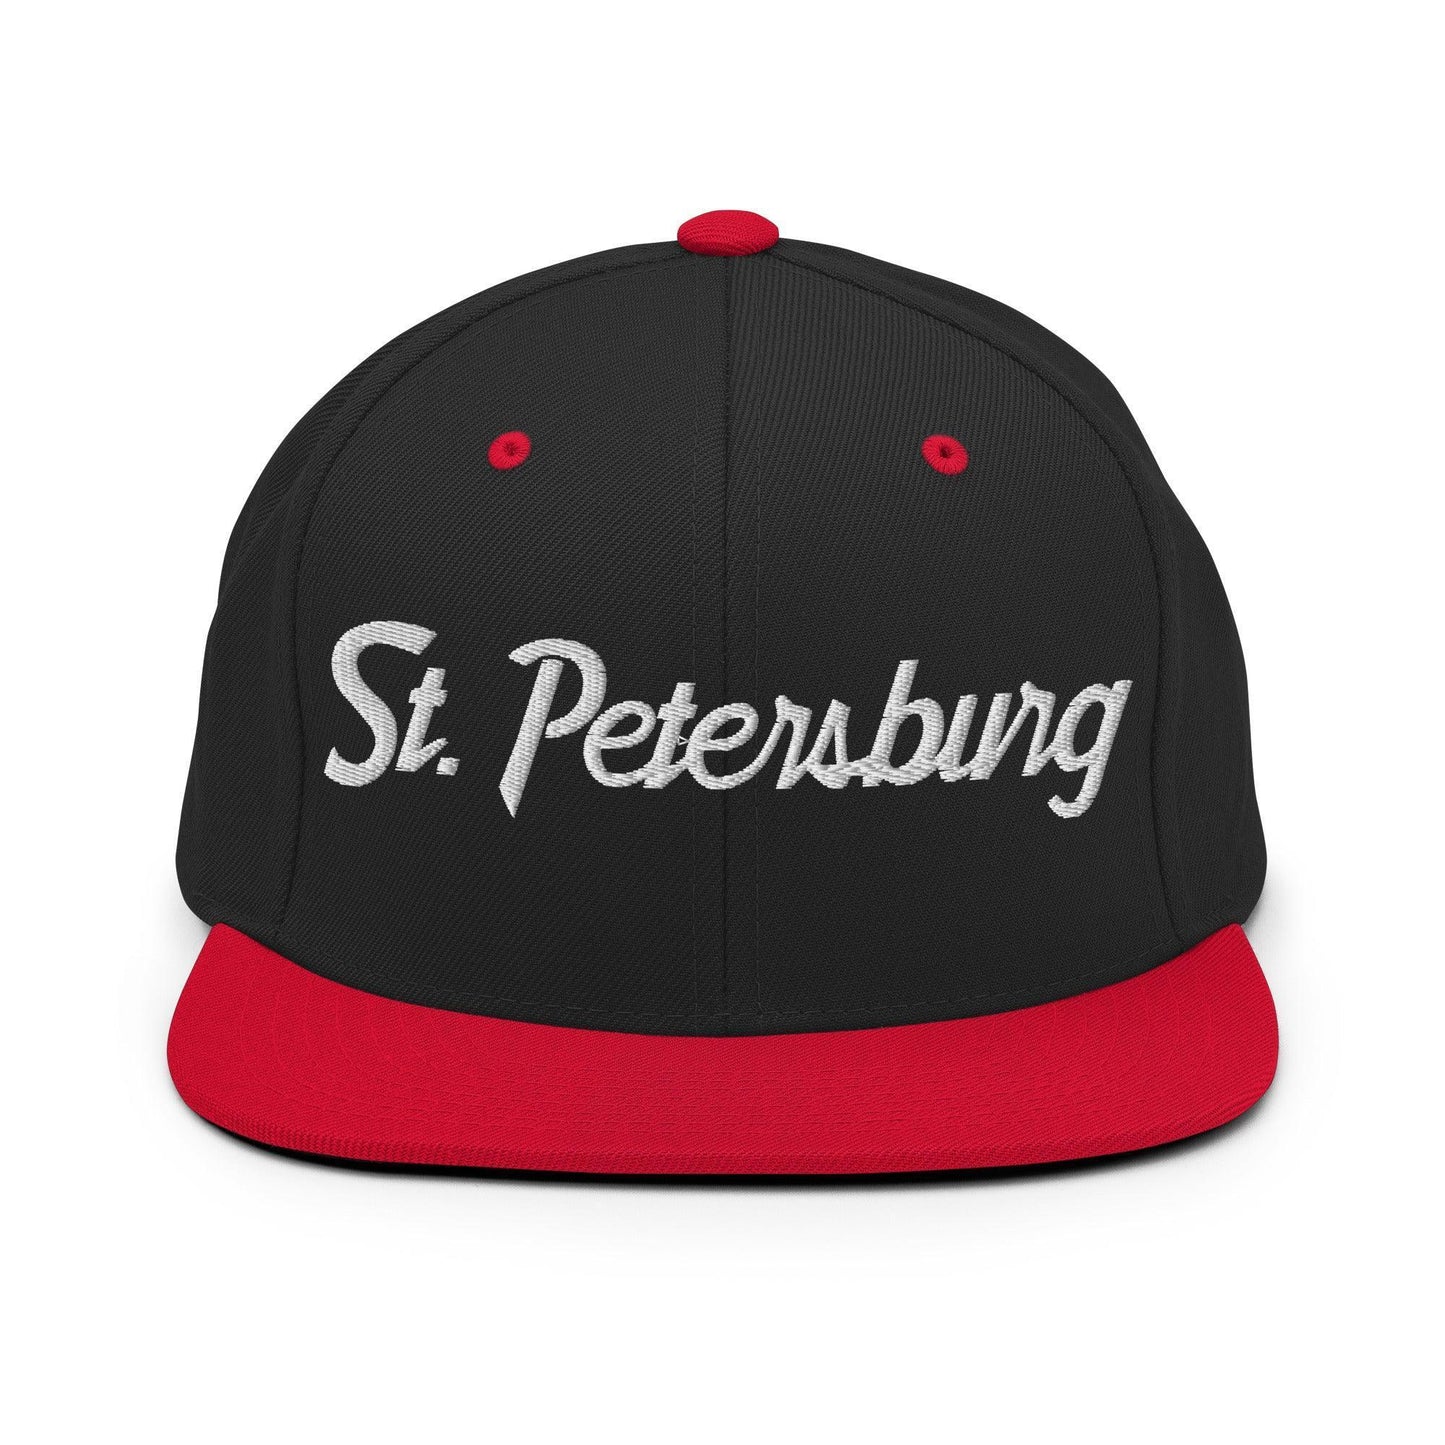 St. Petersburg Script Snapback Hat Black/ Red